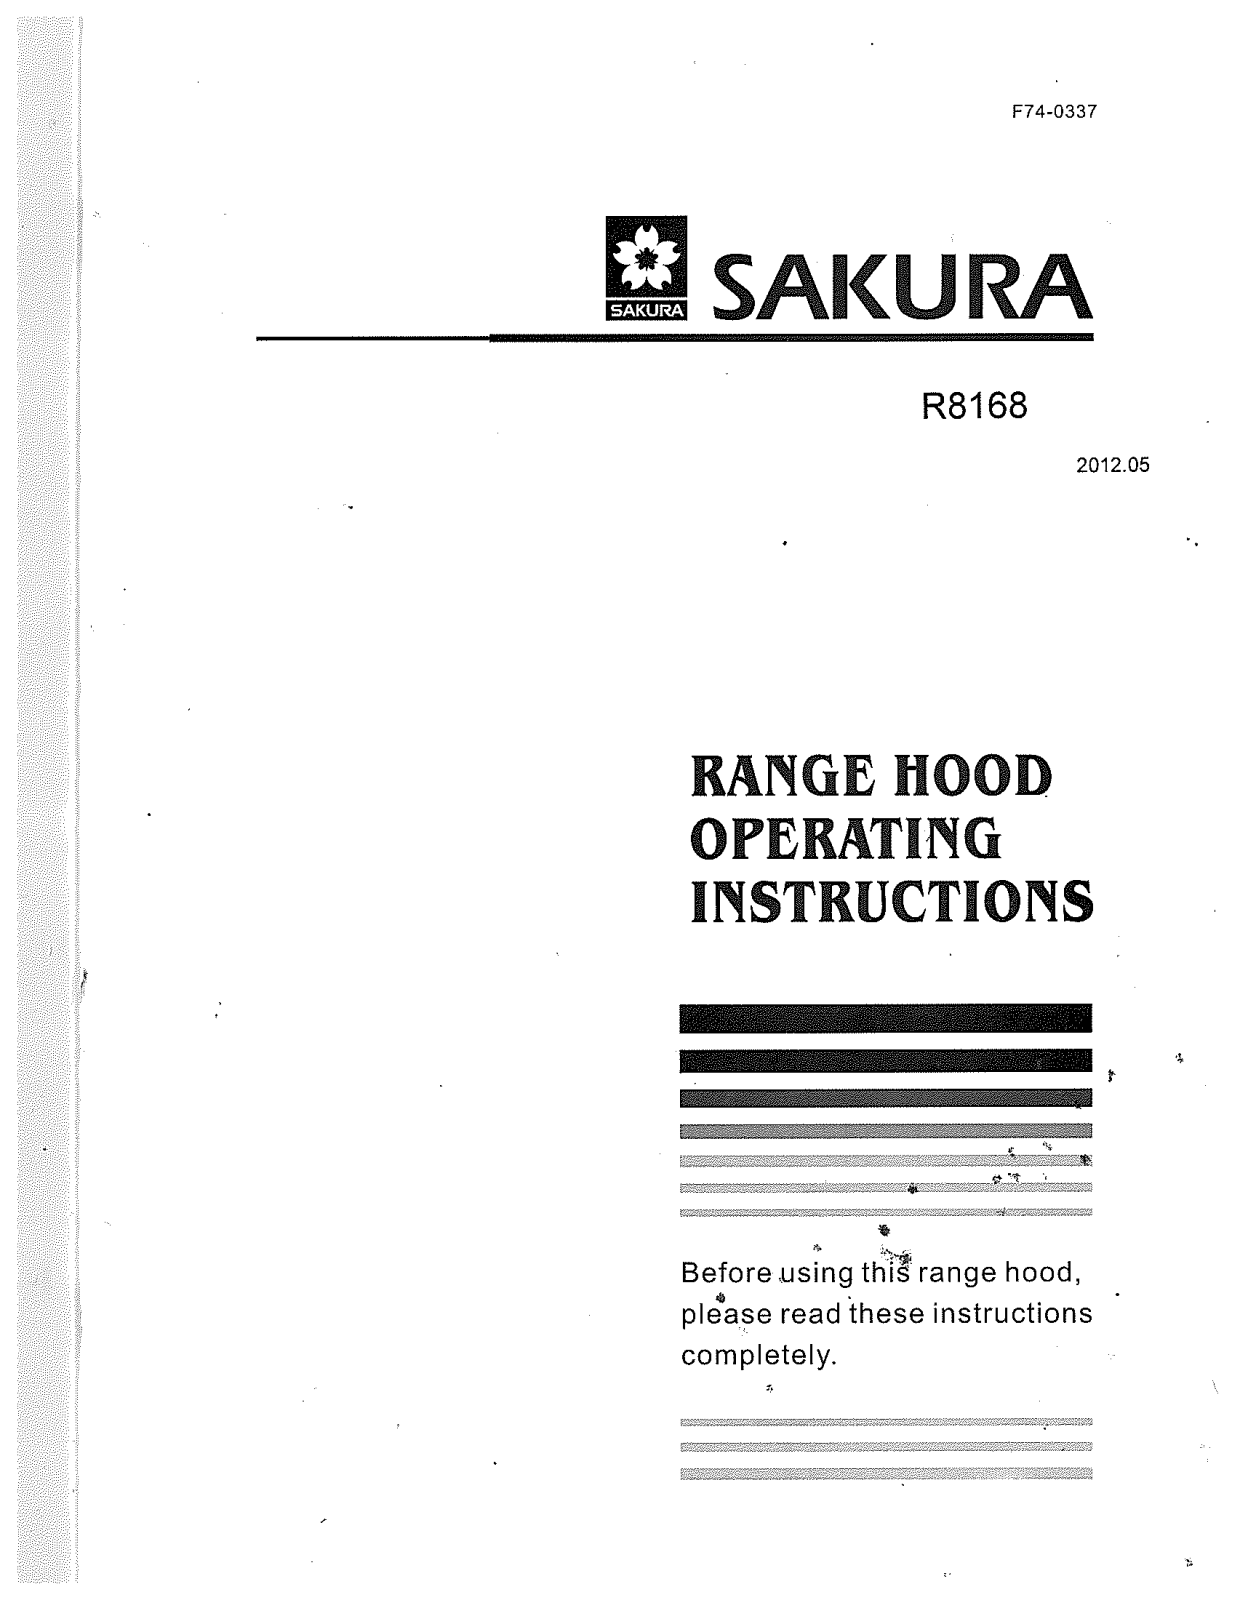 Sakura R8168 User Manual